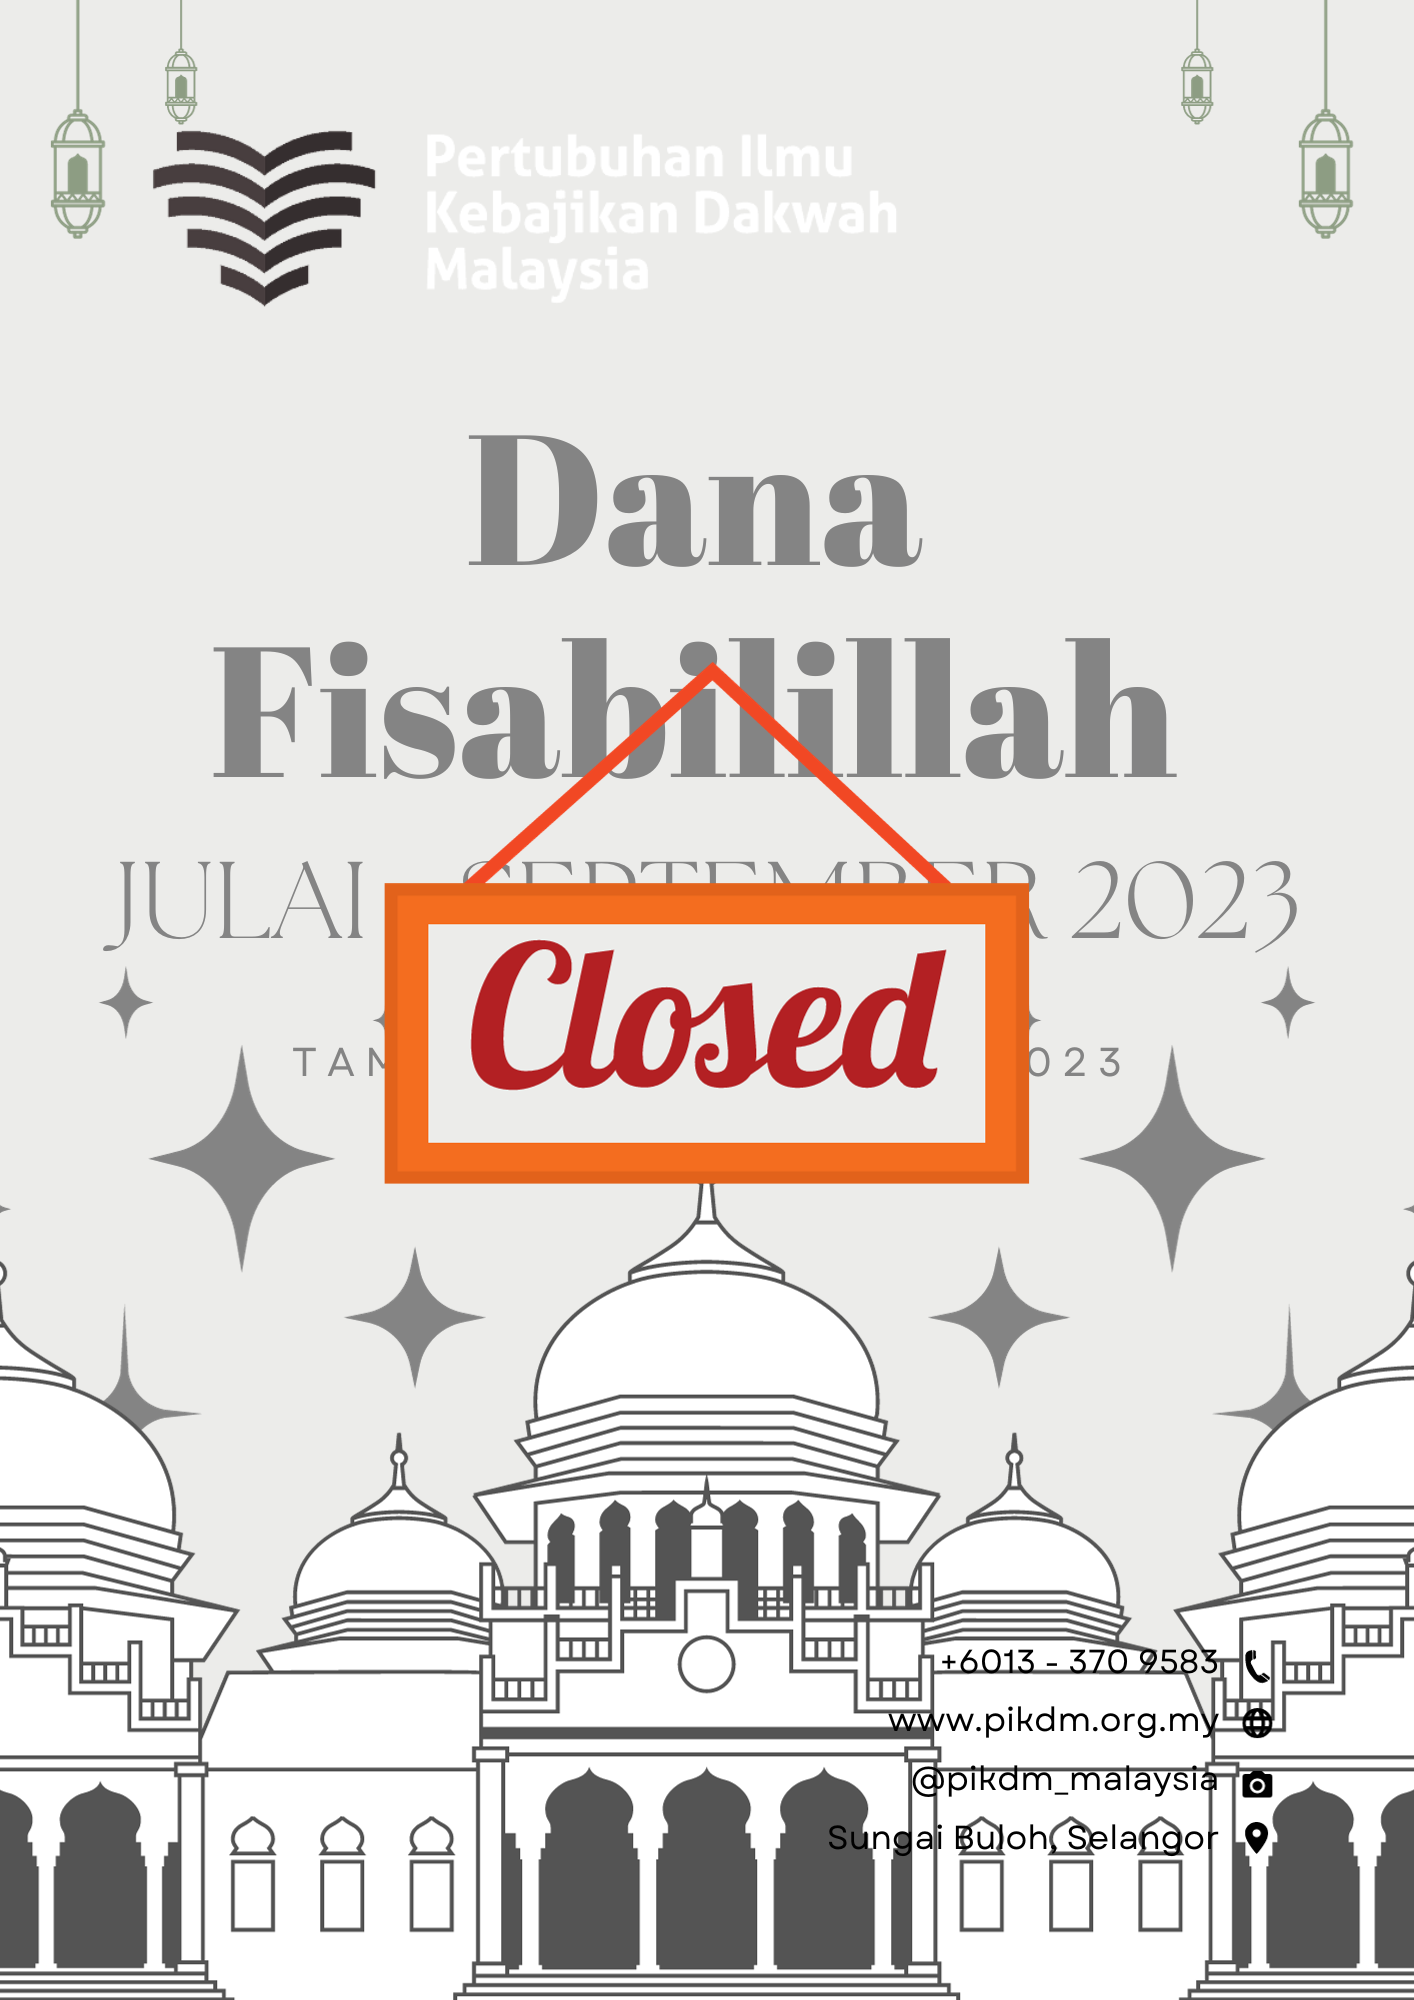 Dana Fisabilillah Julai Sept 2023 Closed